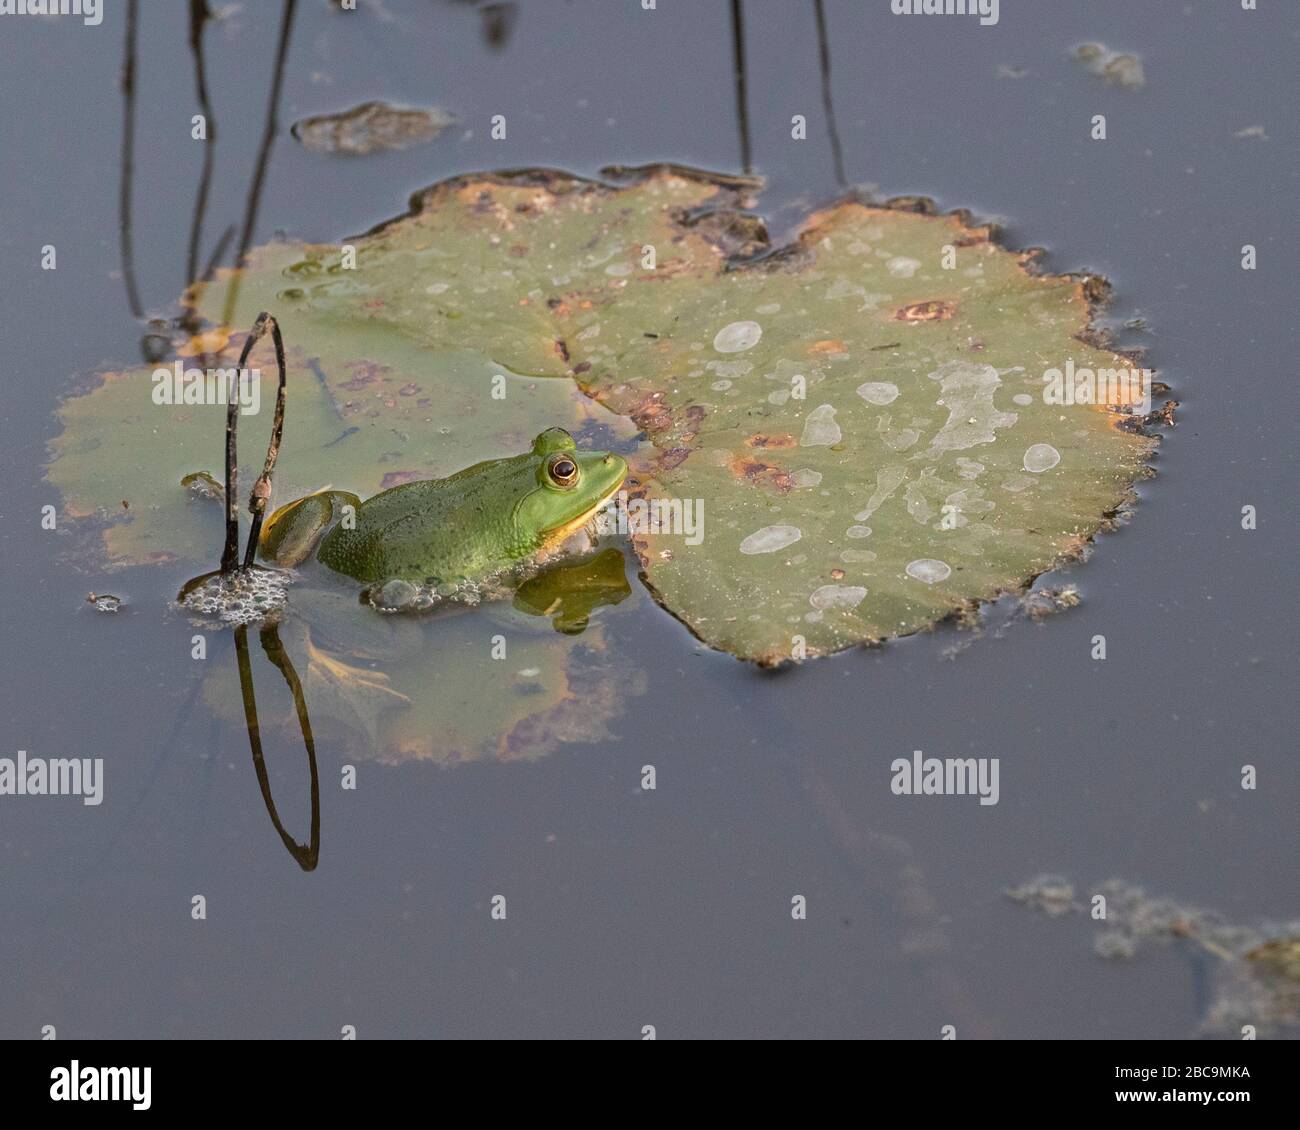 Sri Lankan Green Pond Frog Stock Photo